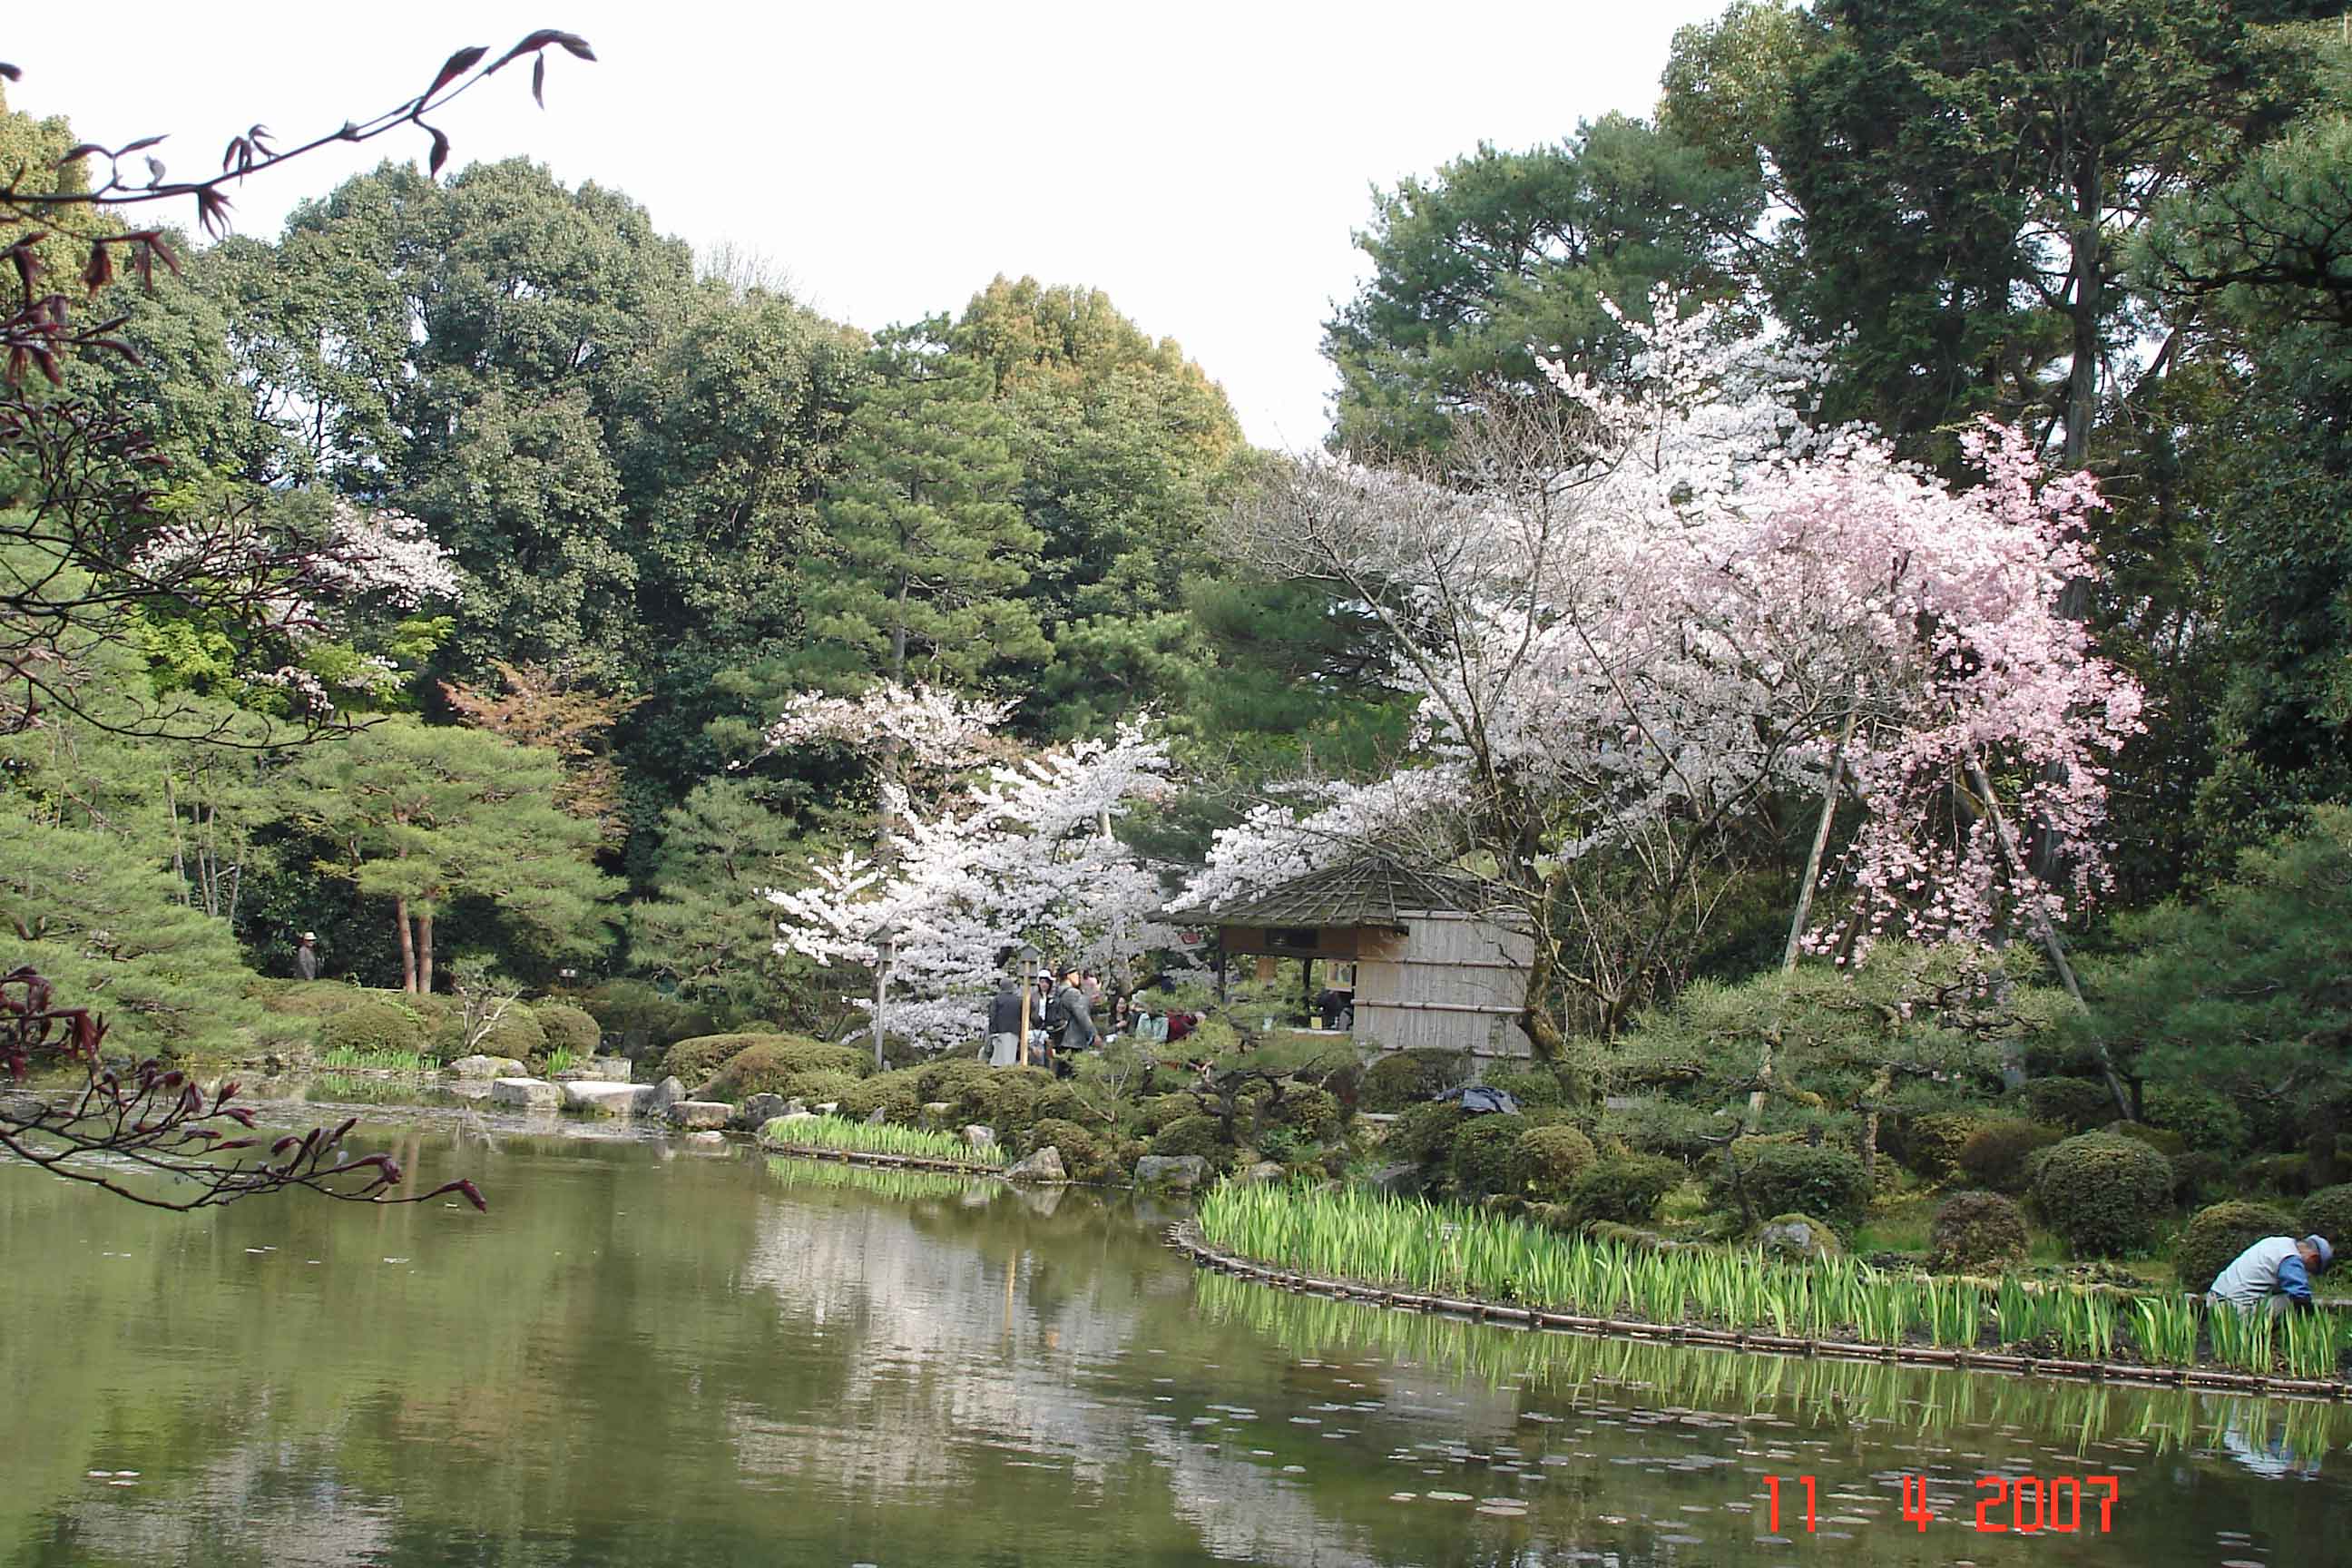 Planting Irises Soryu-ike pond, Heian Jingu Shrine Kyoto